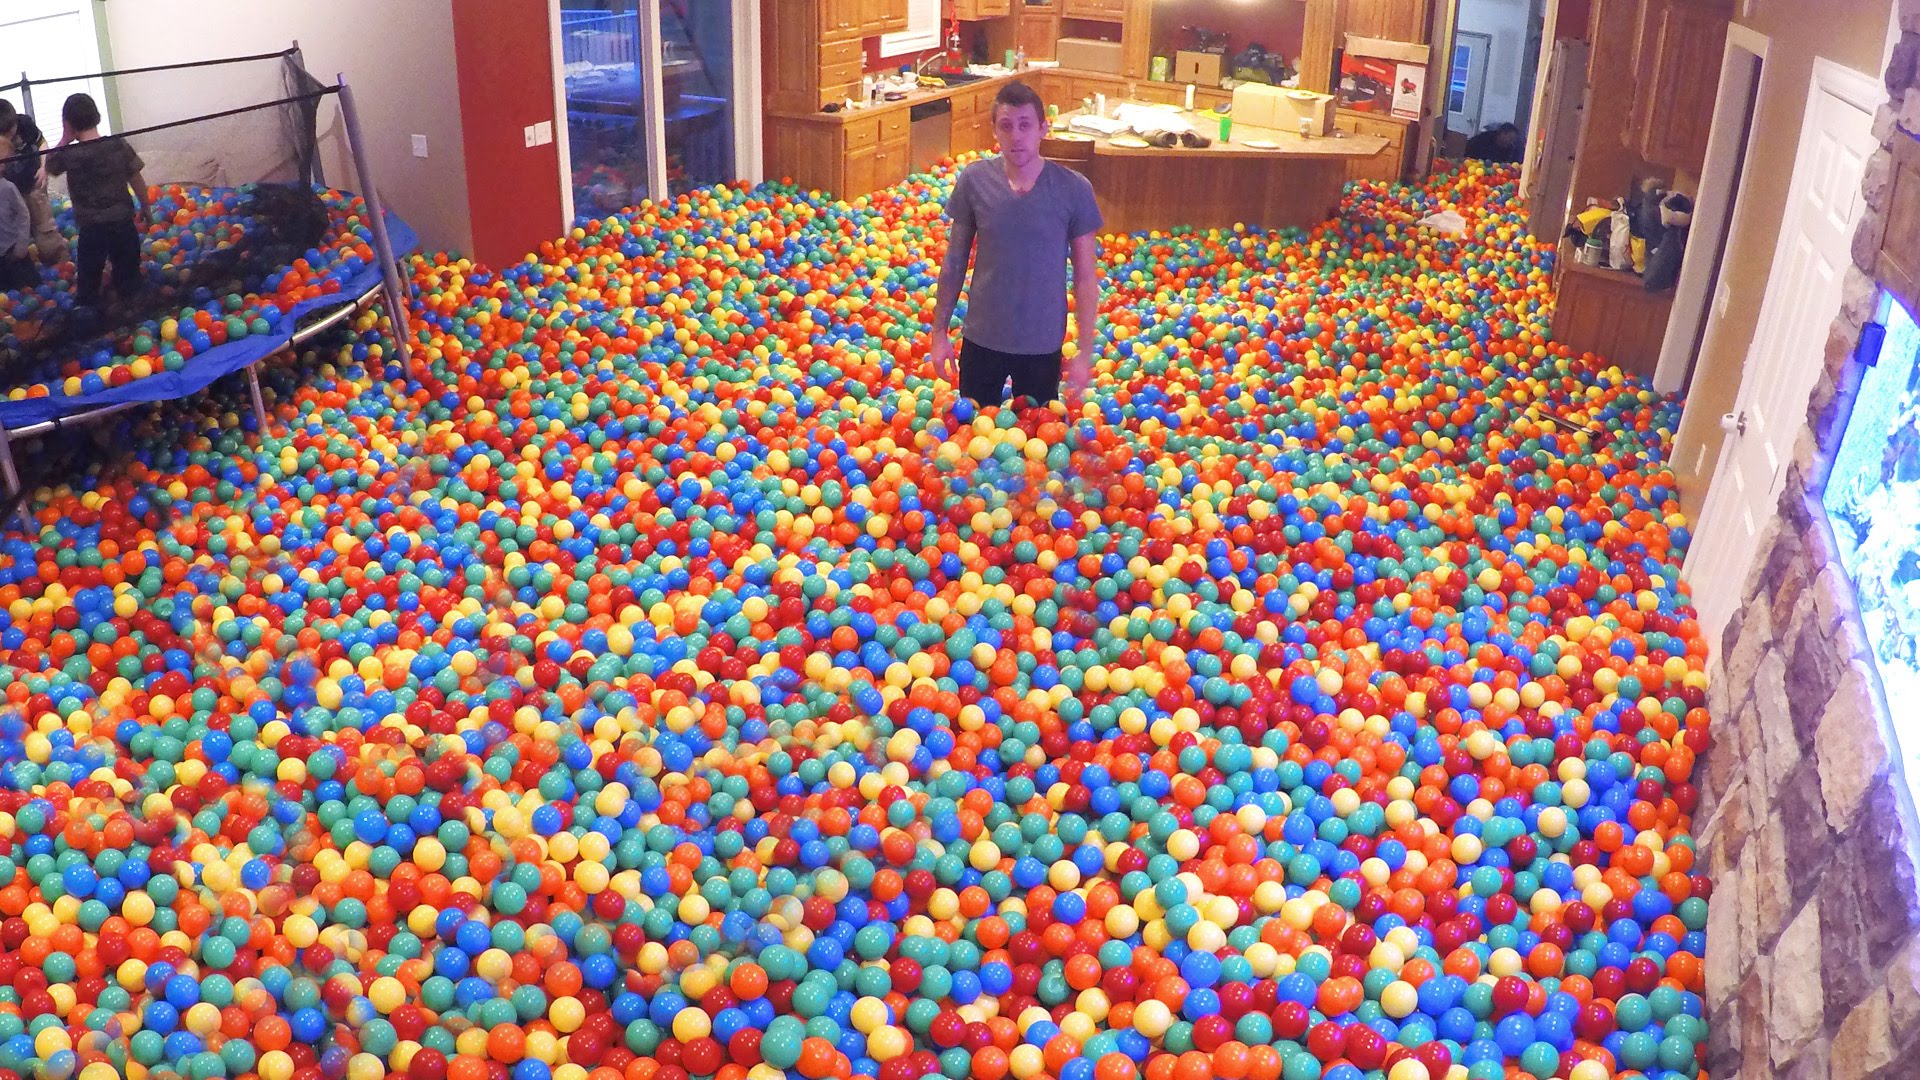 Massive balls